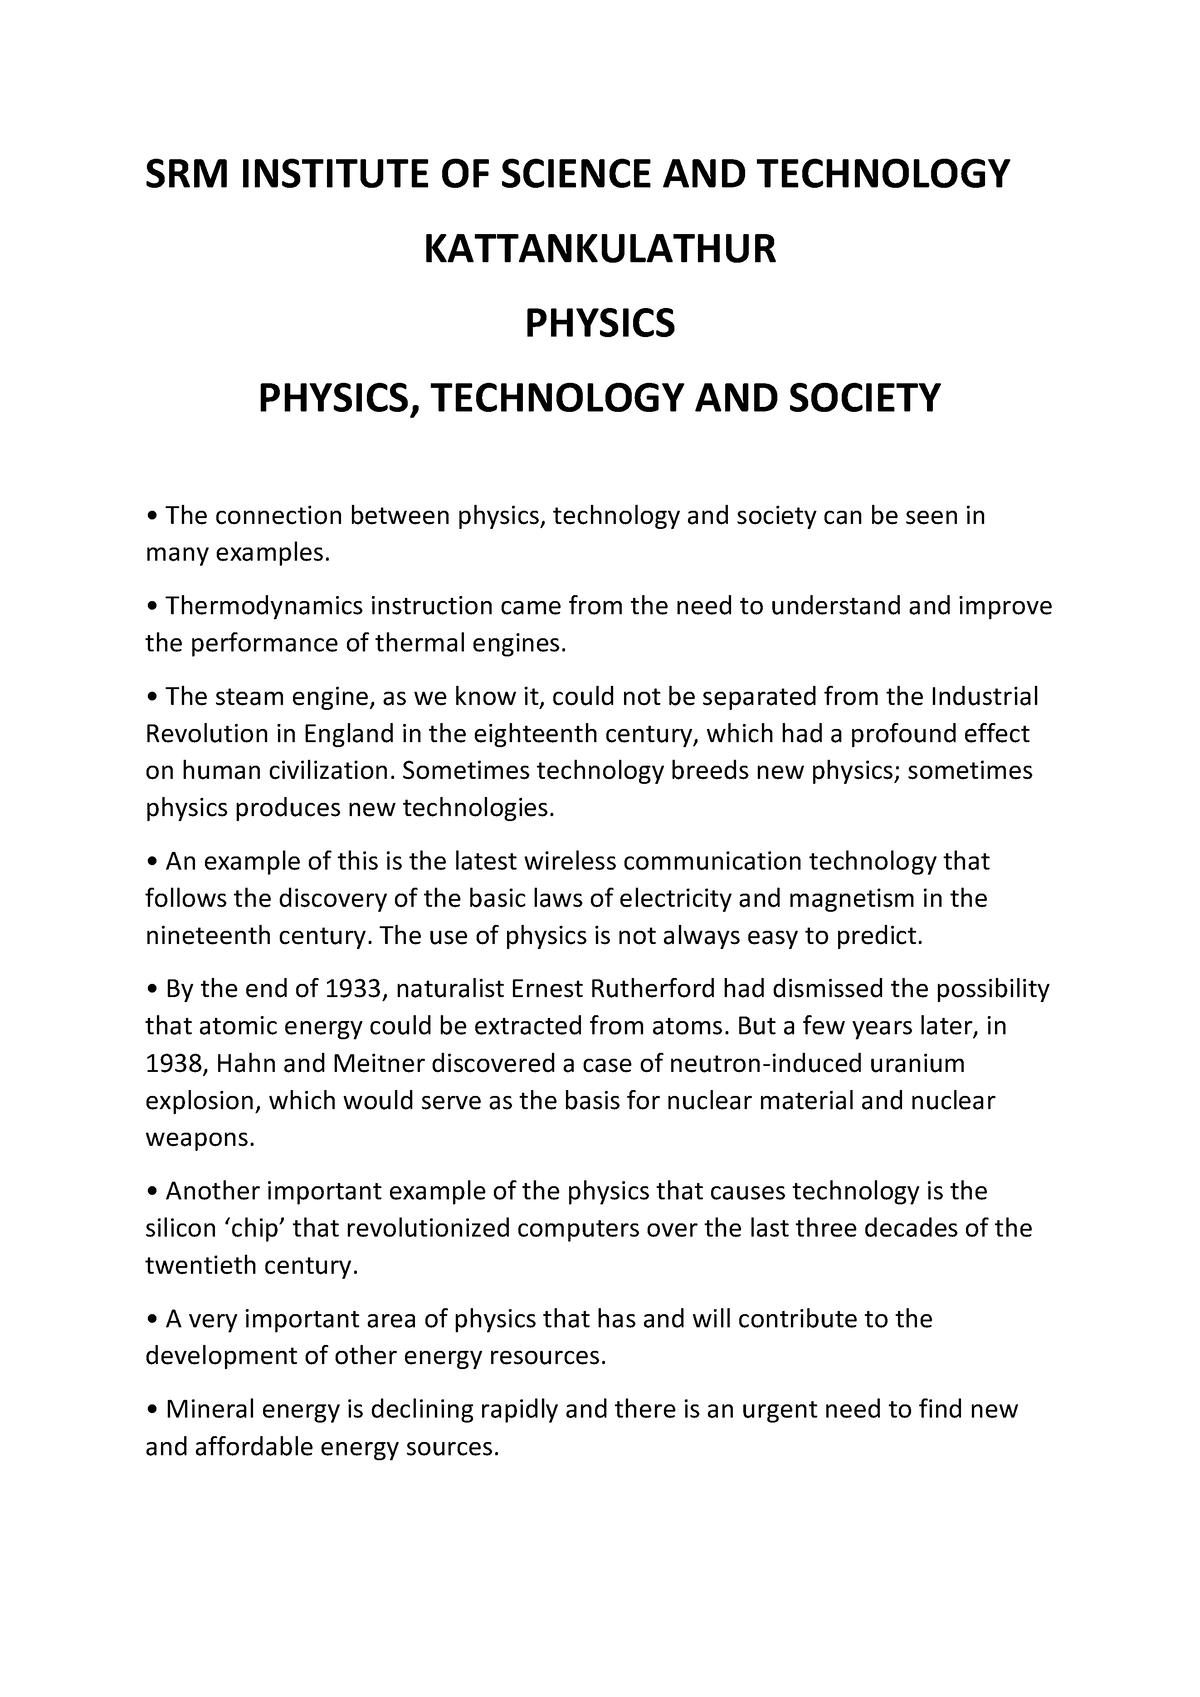 physics technology and society essay